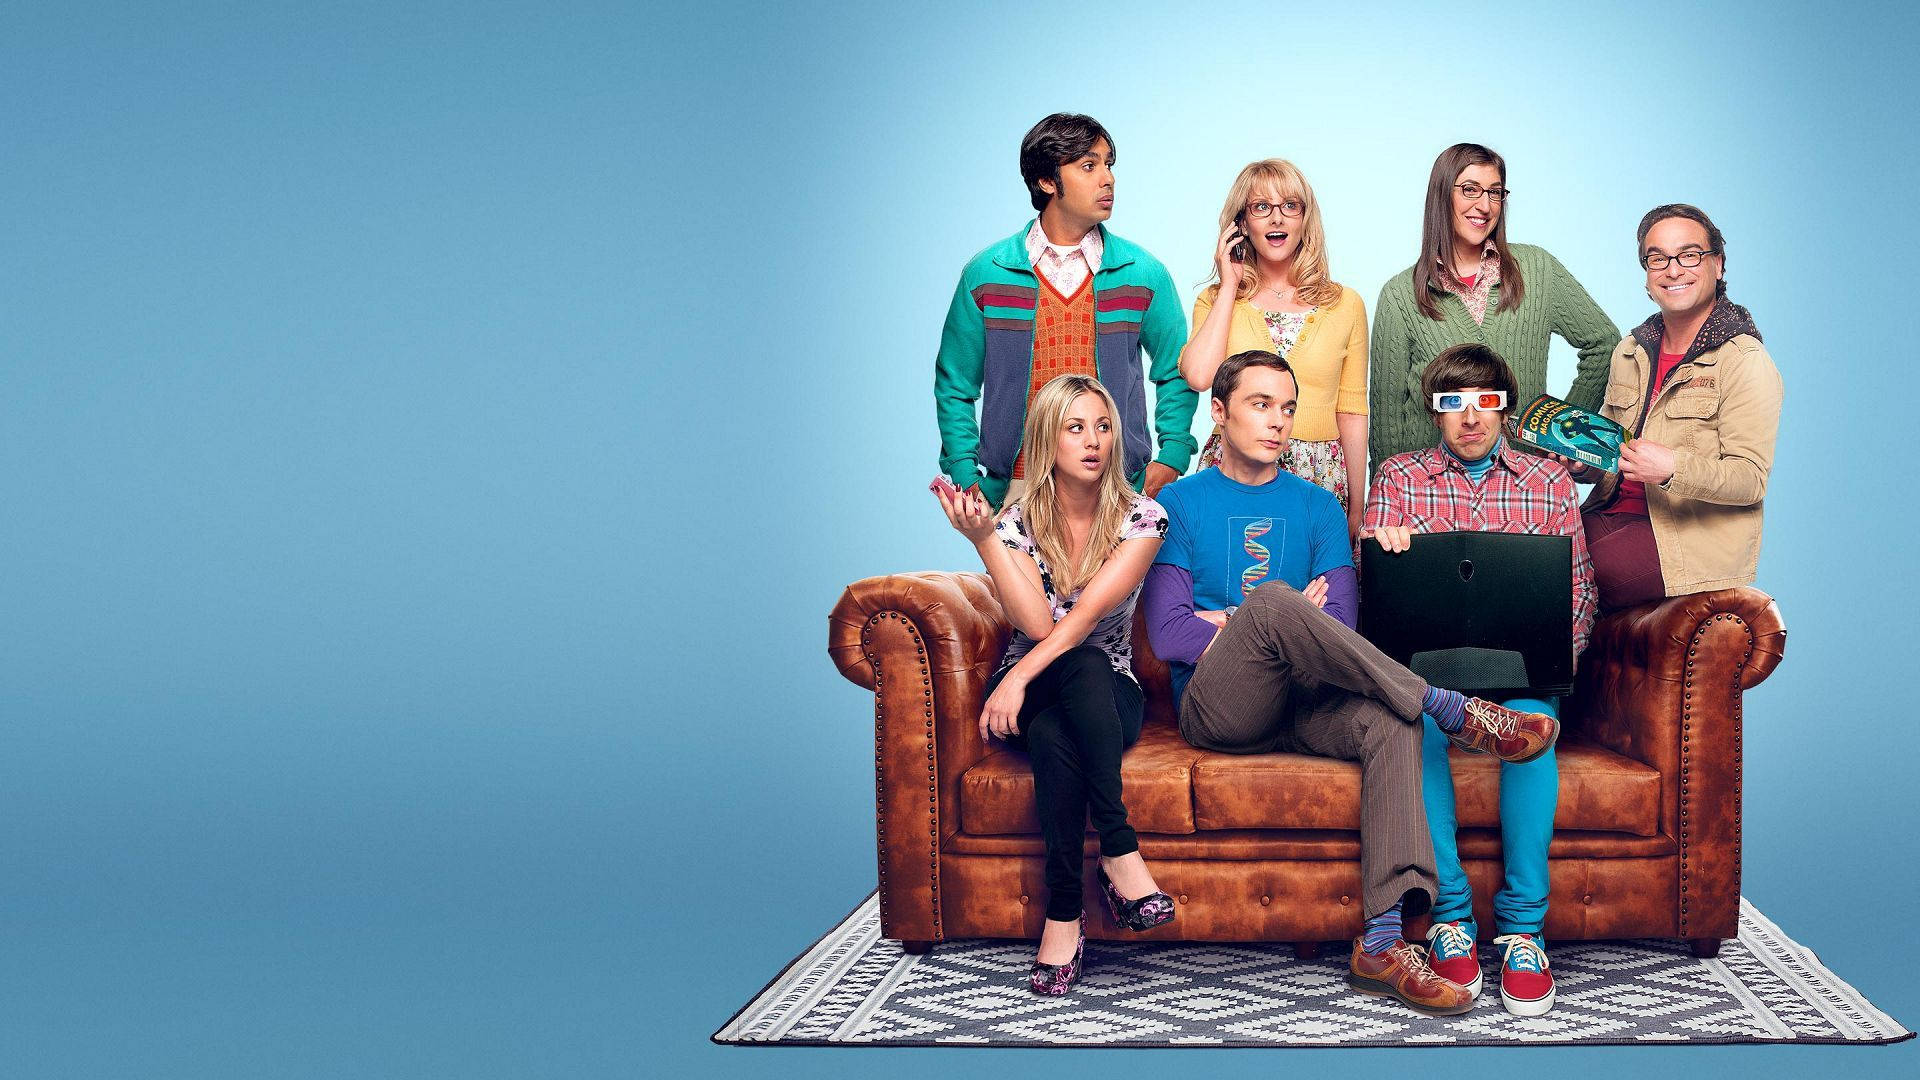 The Big Bang Theory Group Photograph Wallpaper